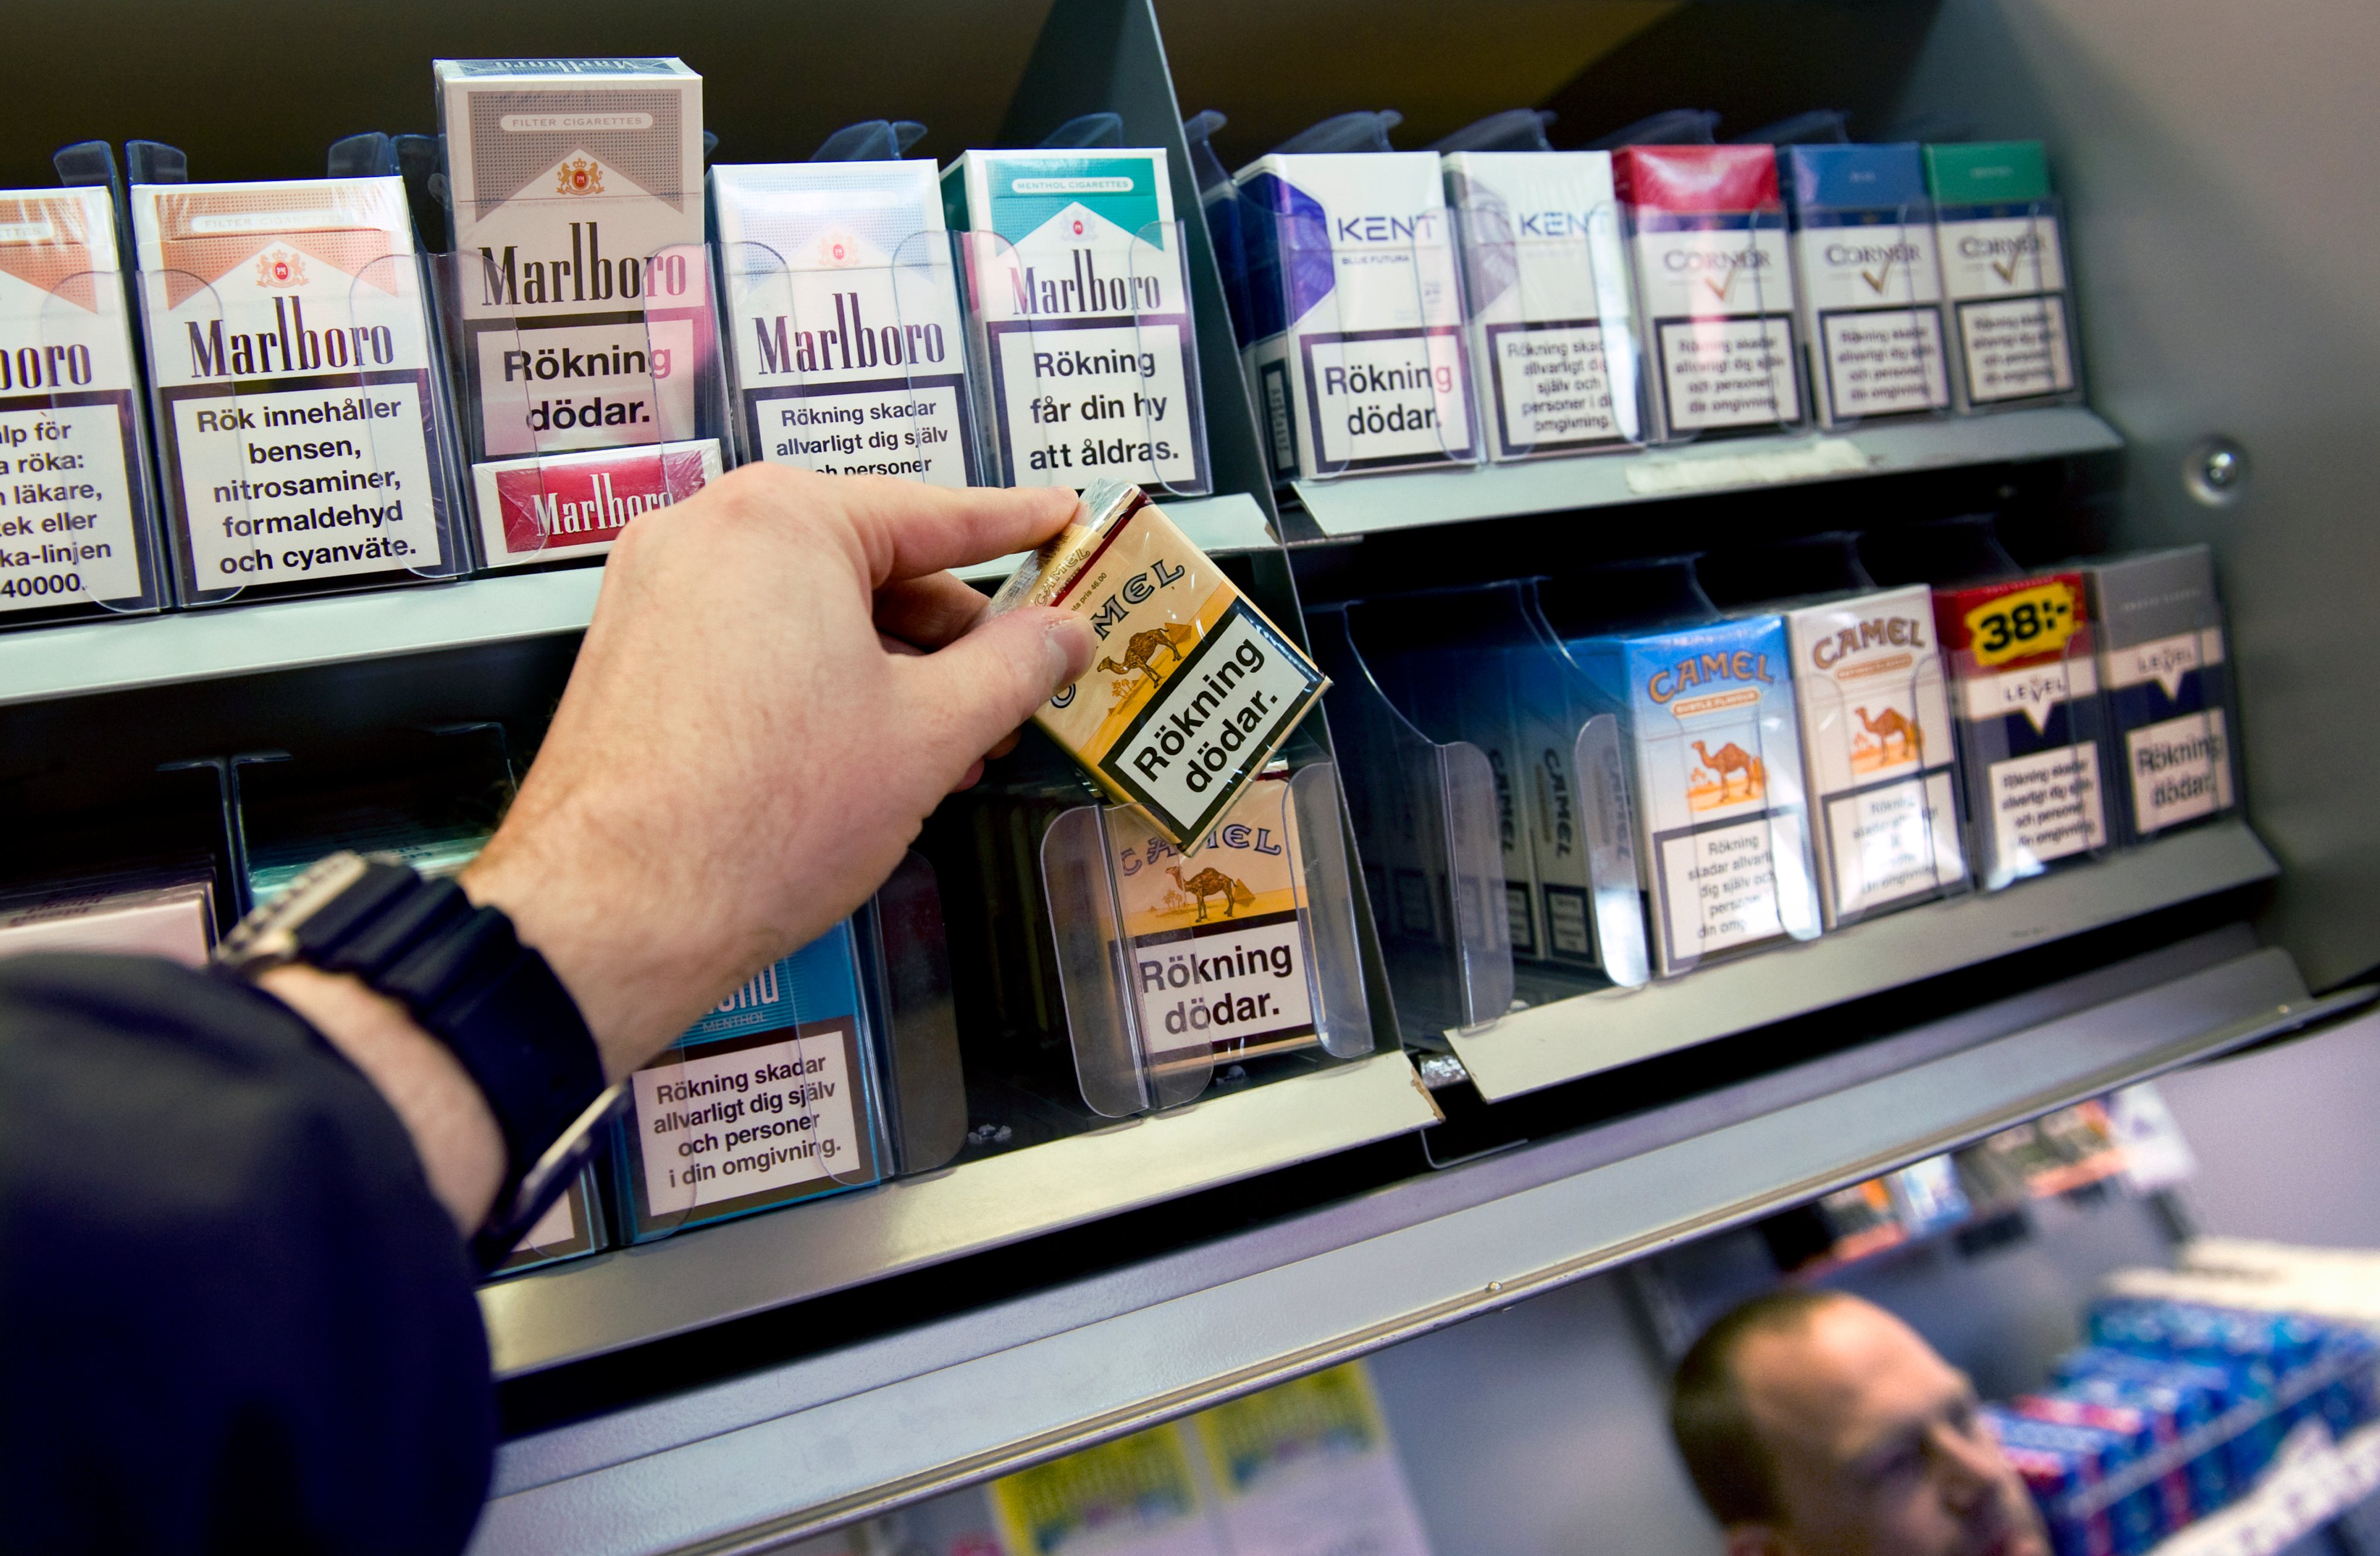 Alliansen, Cigaretter, Riksdagsvalet 2010, Rökning, Lagförslag